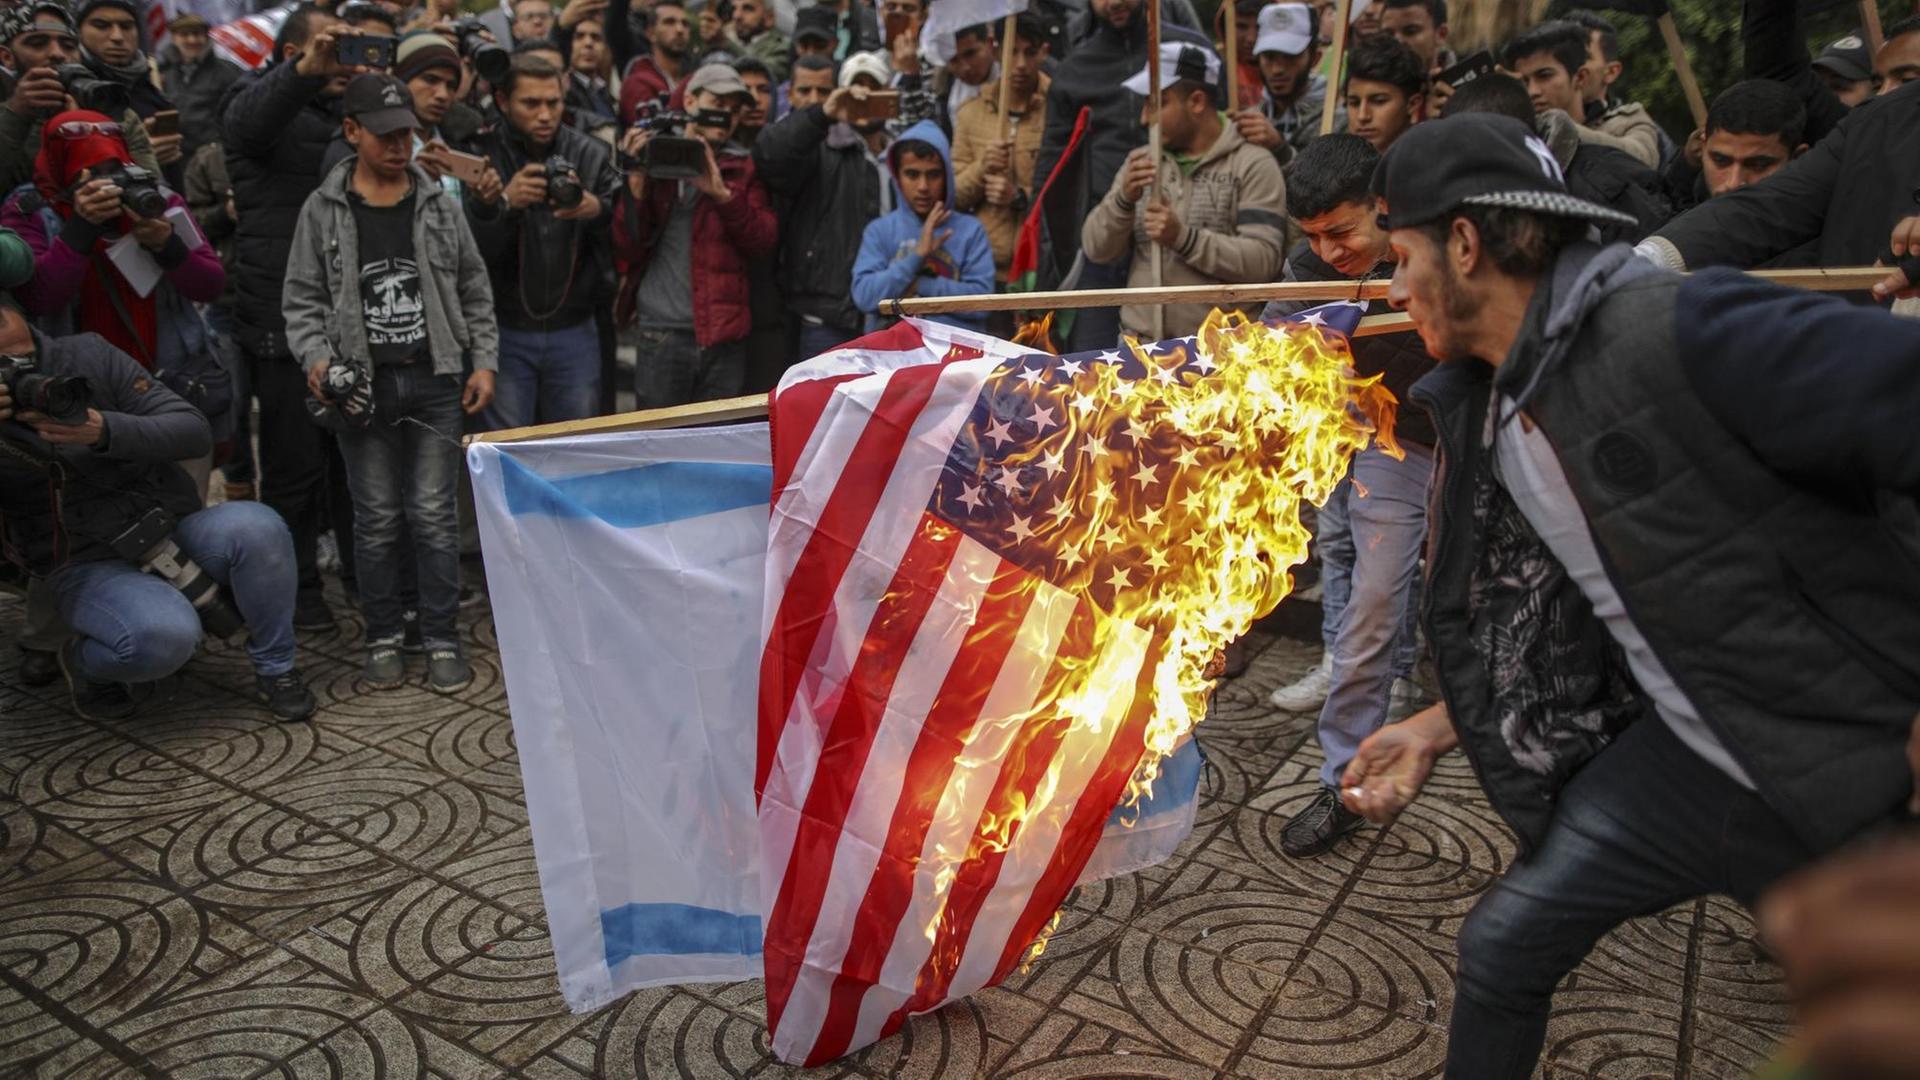 Palästinenser verbrennen am 06.12.2017 in Gaza (Palästinensische Autonomiegebiete) während eines Protests gegen US-Präsident Trumps Vorhaben, Jerusalem als Hauptstadt Israels anzuerkennen, die amerikanische und israelische Flagge. (zu dpa «Trump legt mit Jerusalem die Lunte an das Pulverfass Nahost» vom 06.12.2017)